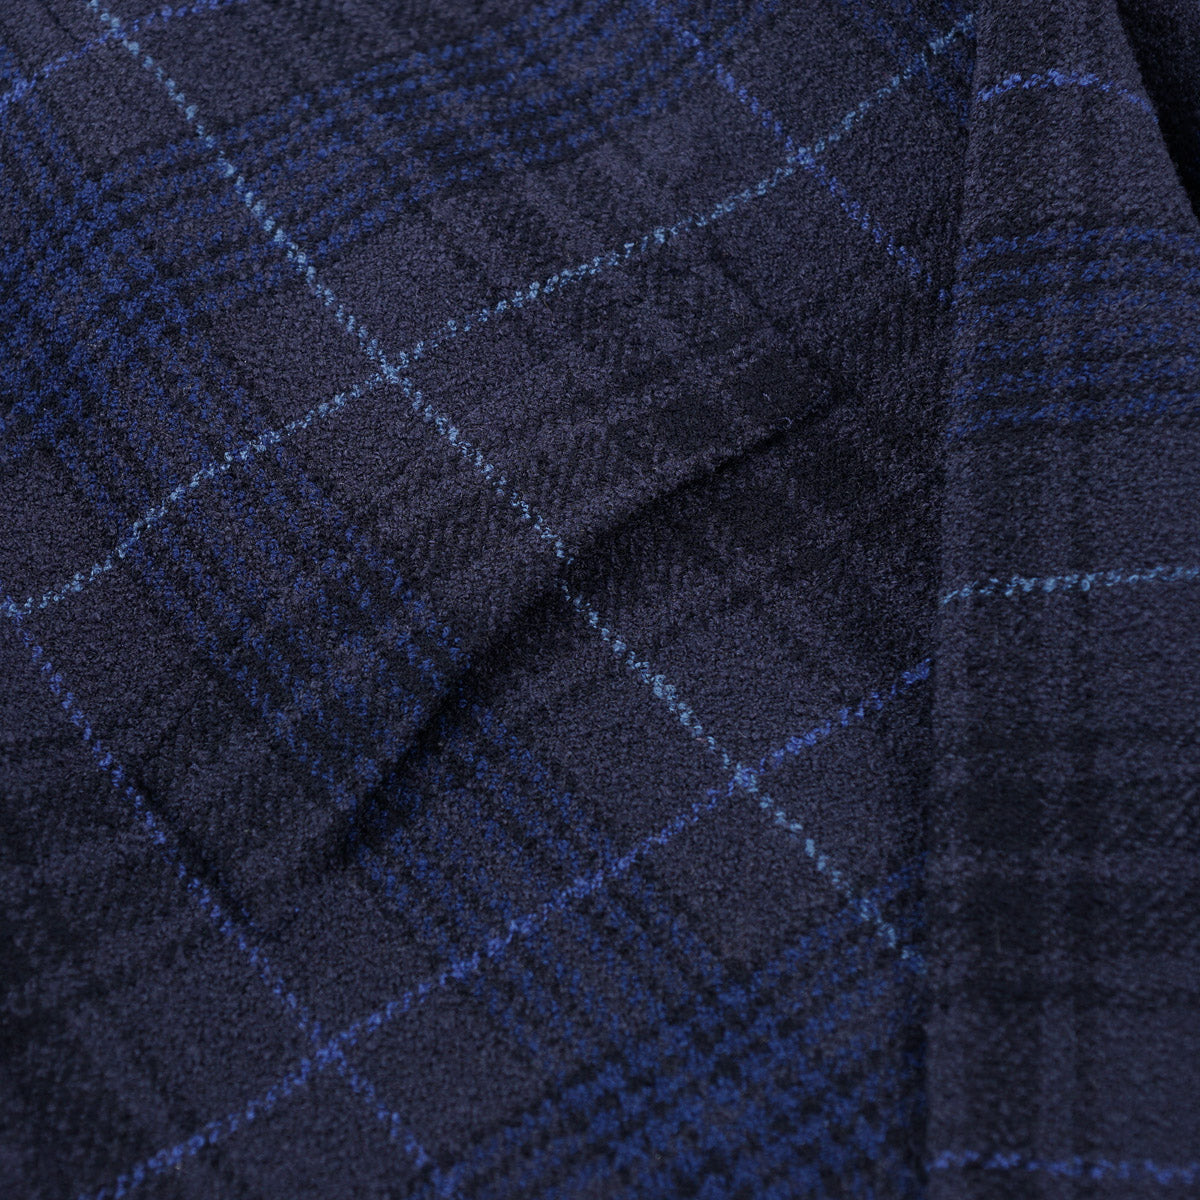 Boglioli Woven Wool 'K Jacket' Sport Coat - Top Shelf Apparel